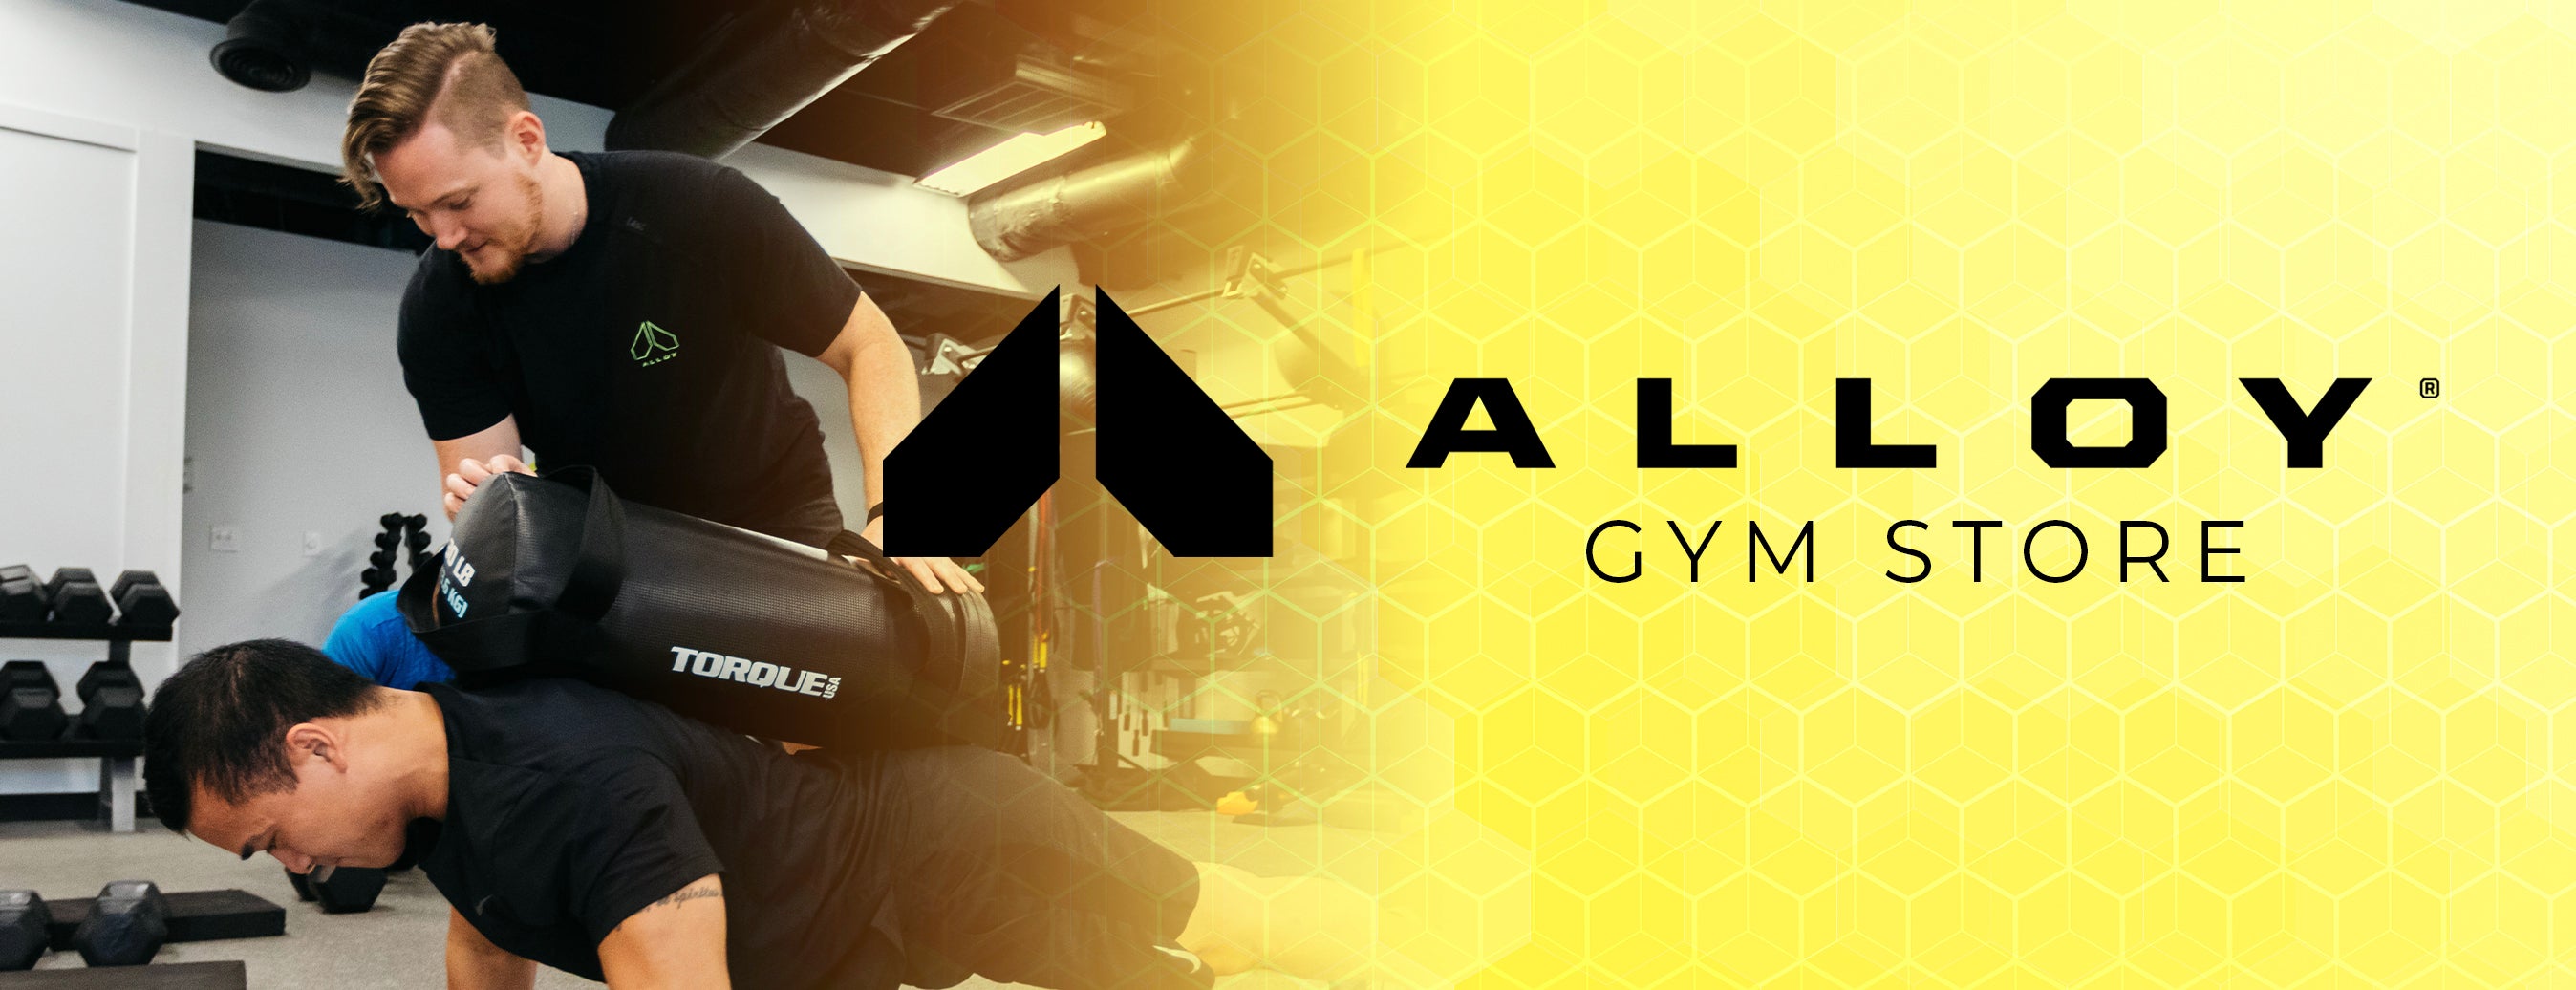 Alloy Gym